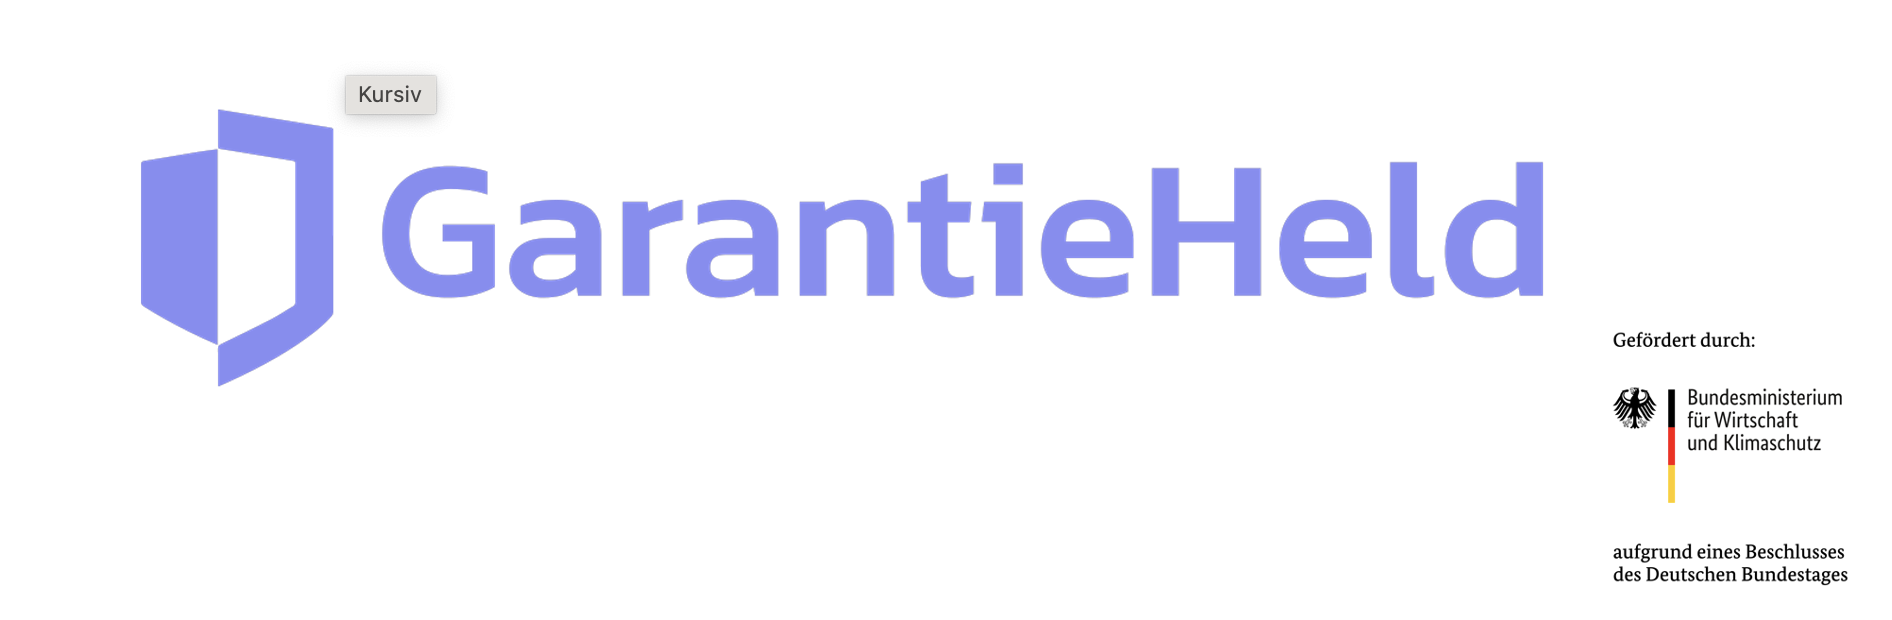 GarantieHeld / startup von Haimhausen / Background